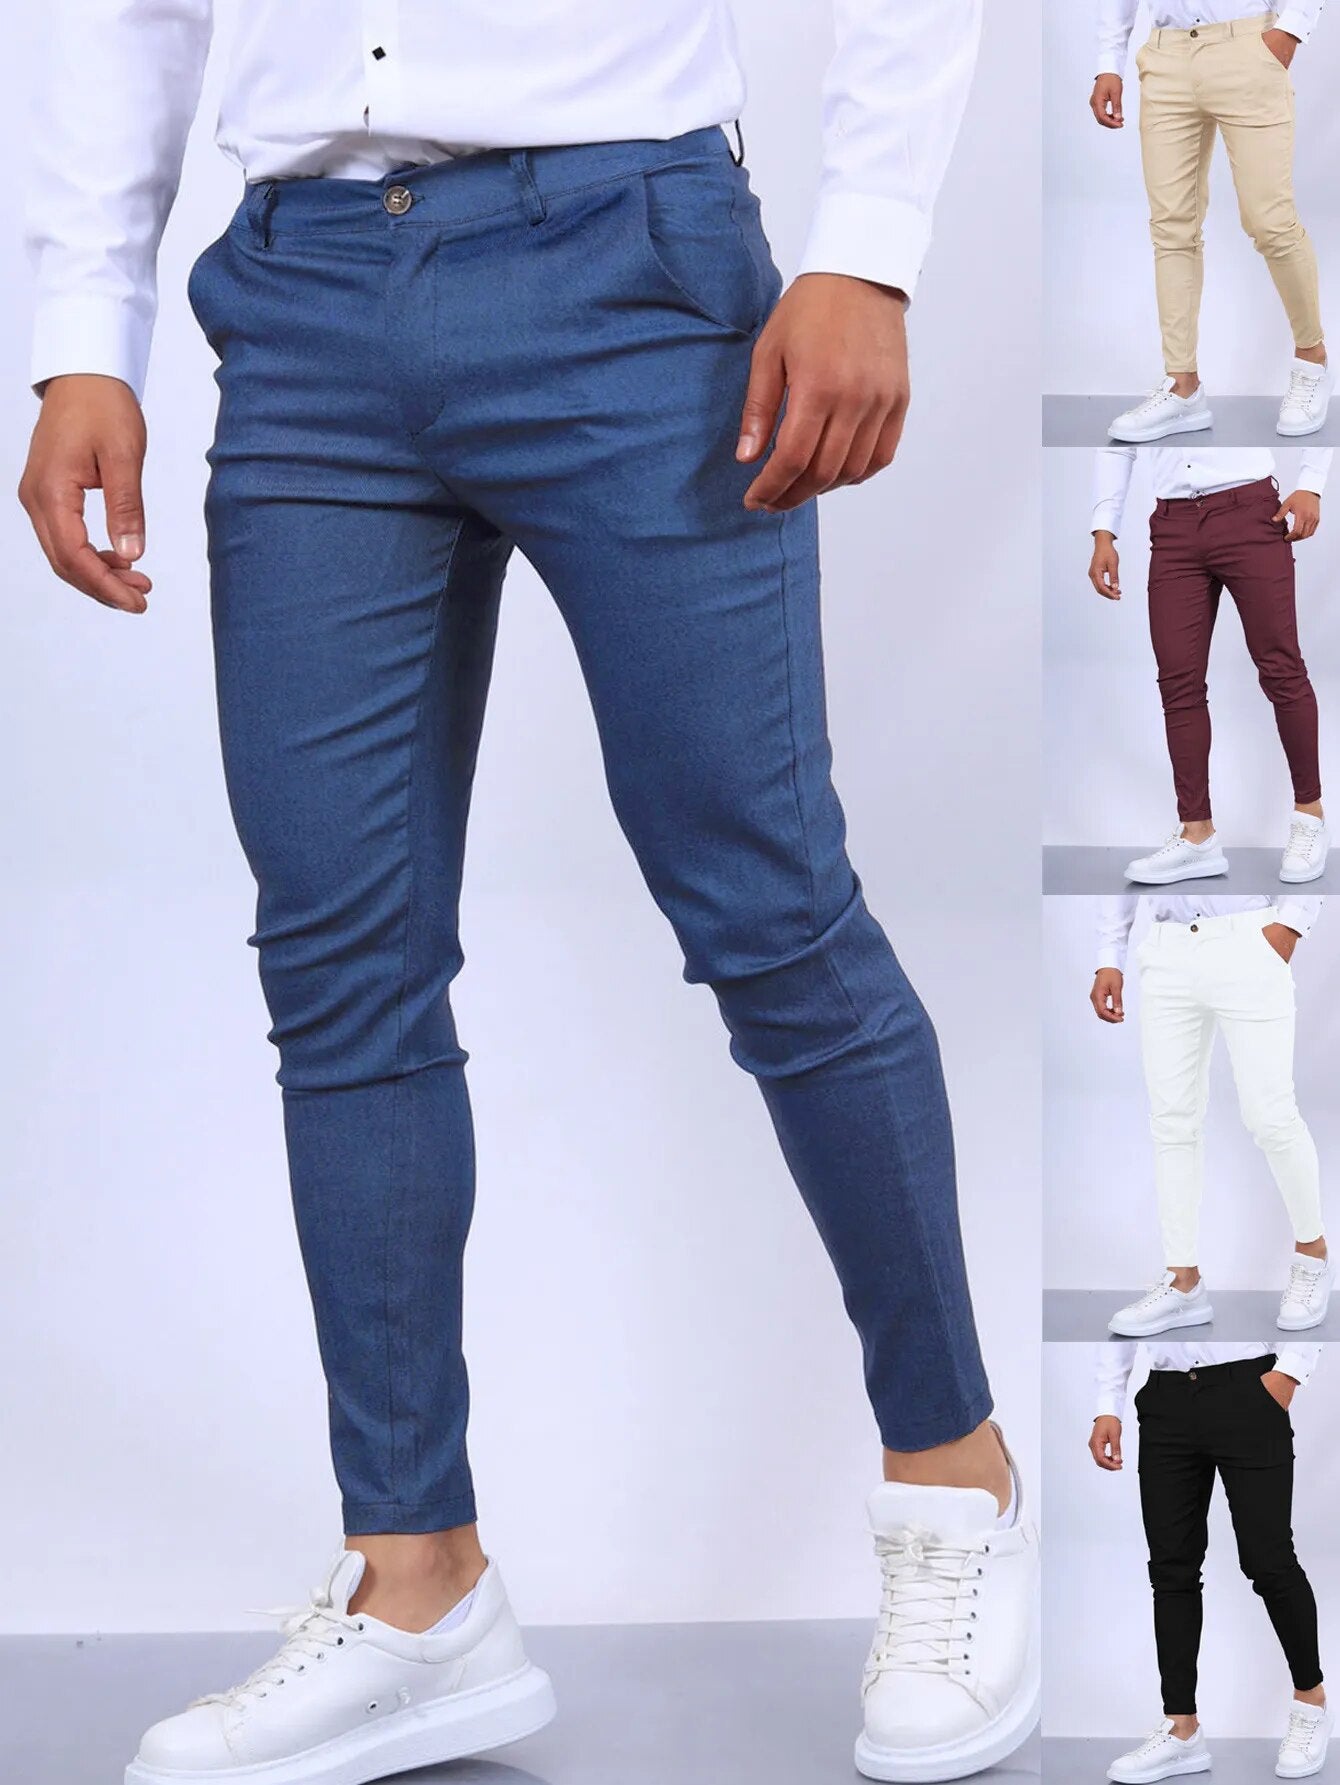 Solid Color Fashion Men's Pants